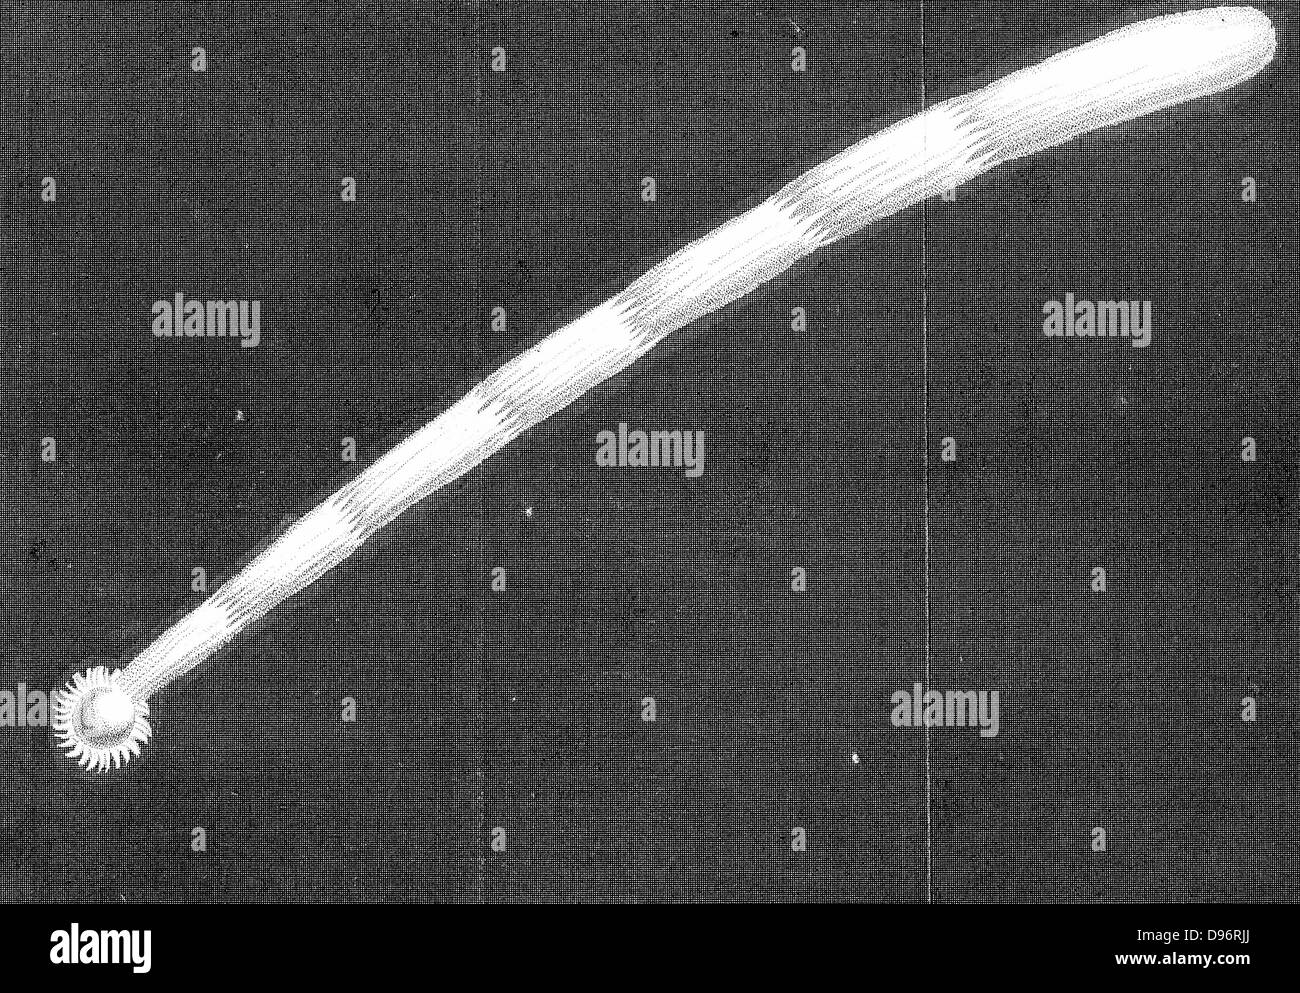 Großen Kometen von 1680 (Kirch), wie es schien, als es der Sonne Newton genähert berechnet es war bei 88.000 km/h und es ging so in der Nähe der Sonne, die gleichzeitig war es nur 1/6 der Durchmesser der Sonne von seiner Oberfläche. Kupferstich. Stockfoto